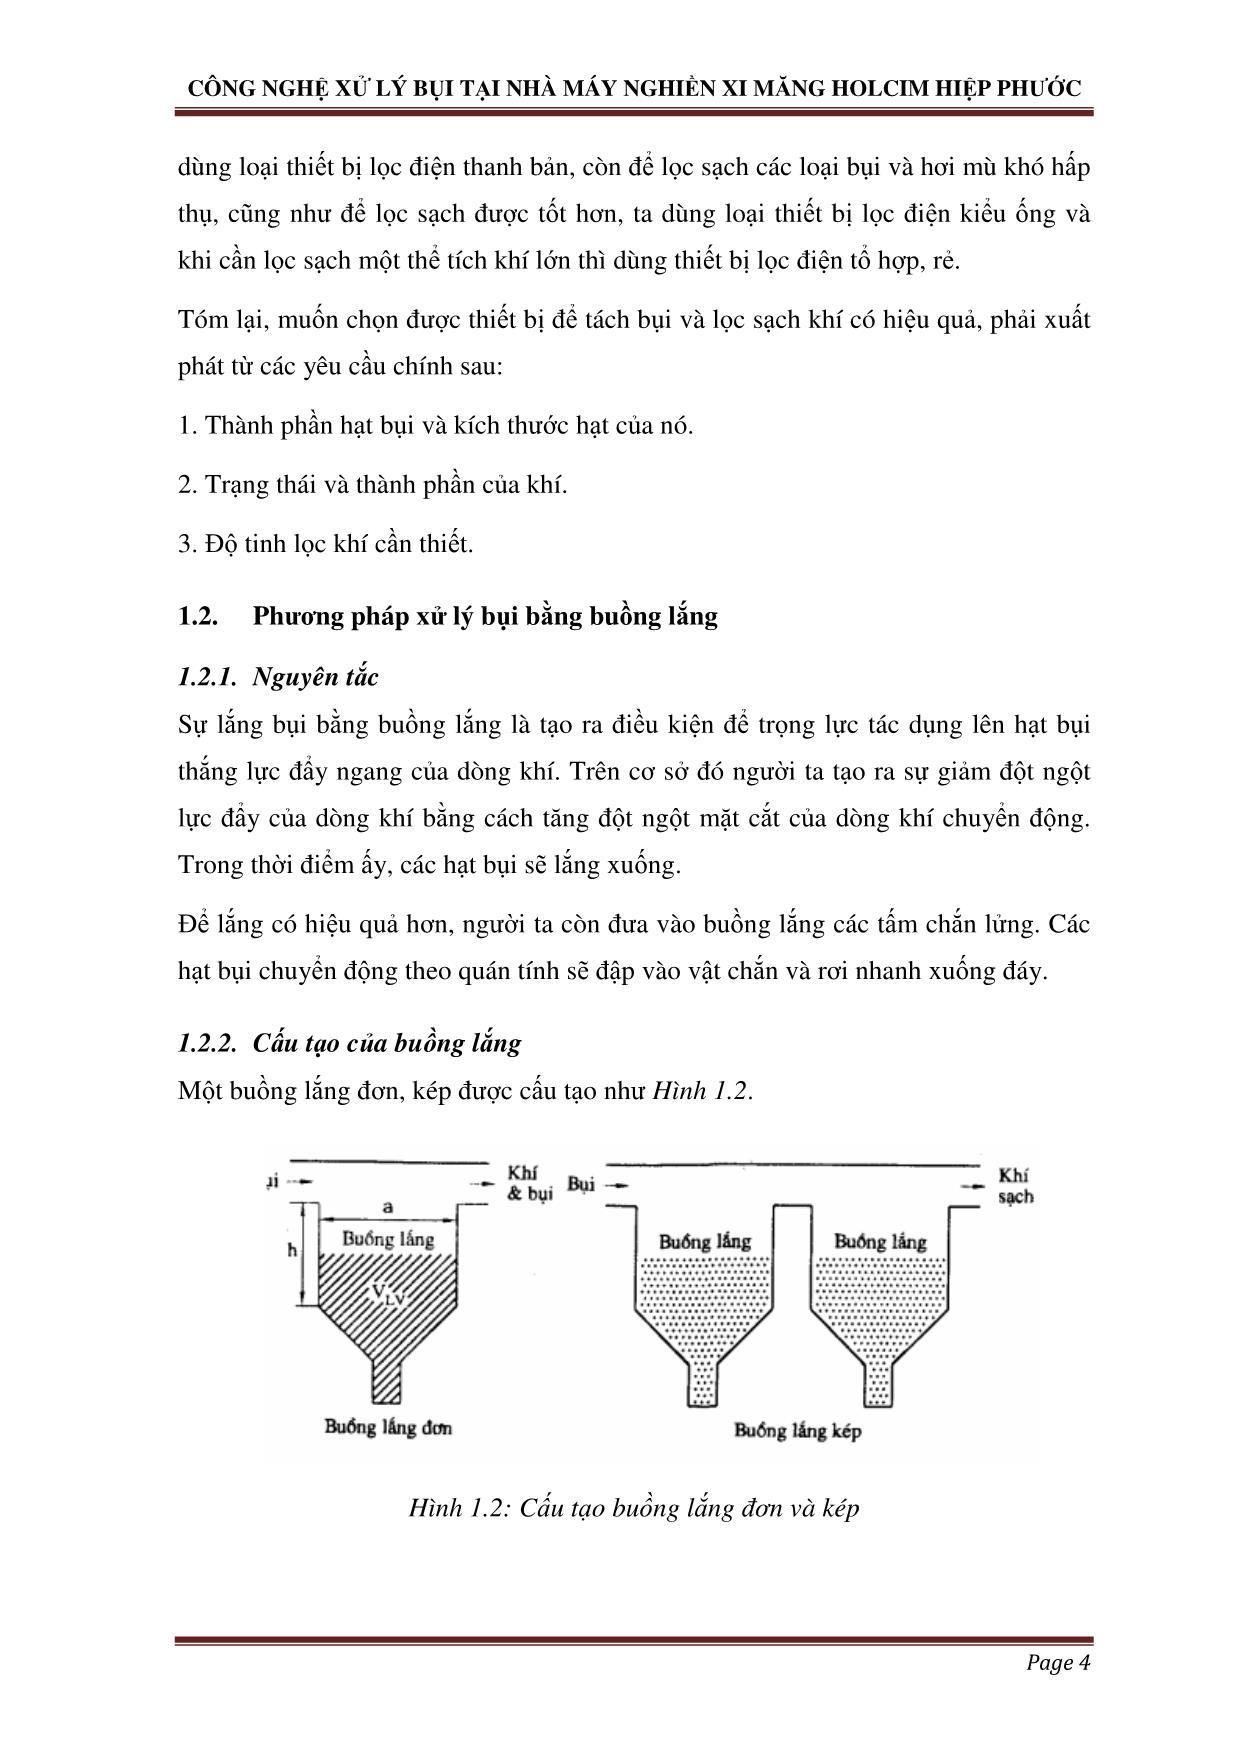 Chuyên đề Công nghệ xử lý bụi - Case study: công nghệ xử lý bụi tại nhà máy nghiền xi măng holcim Hiệp Phước trang 5